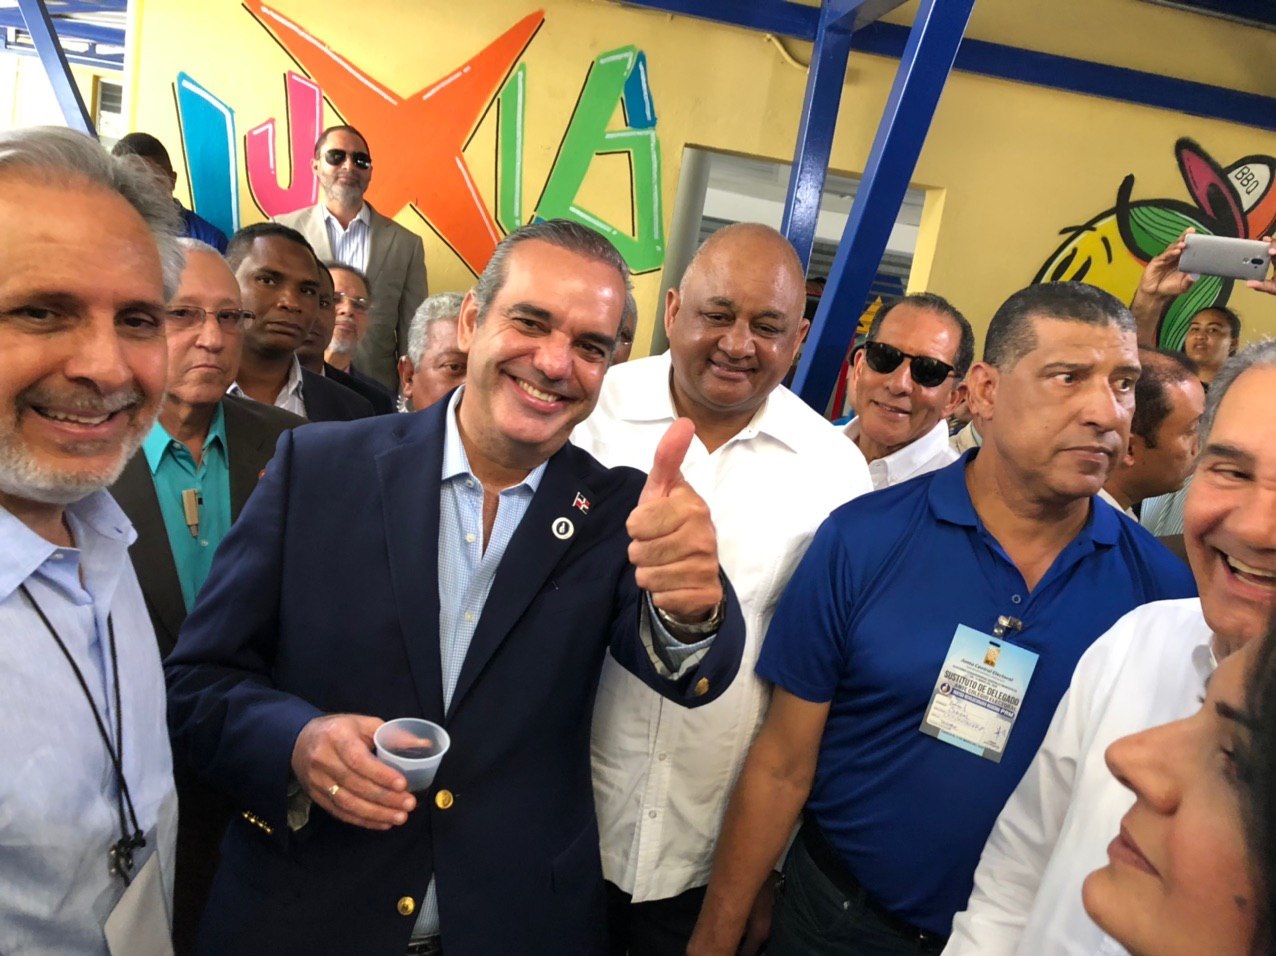 Maduro y Guaidó felicitan a Abinader por victoria electoral en República Dominicana